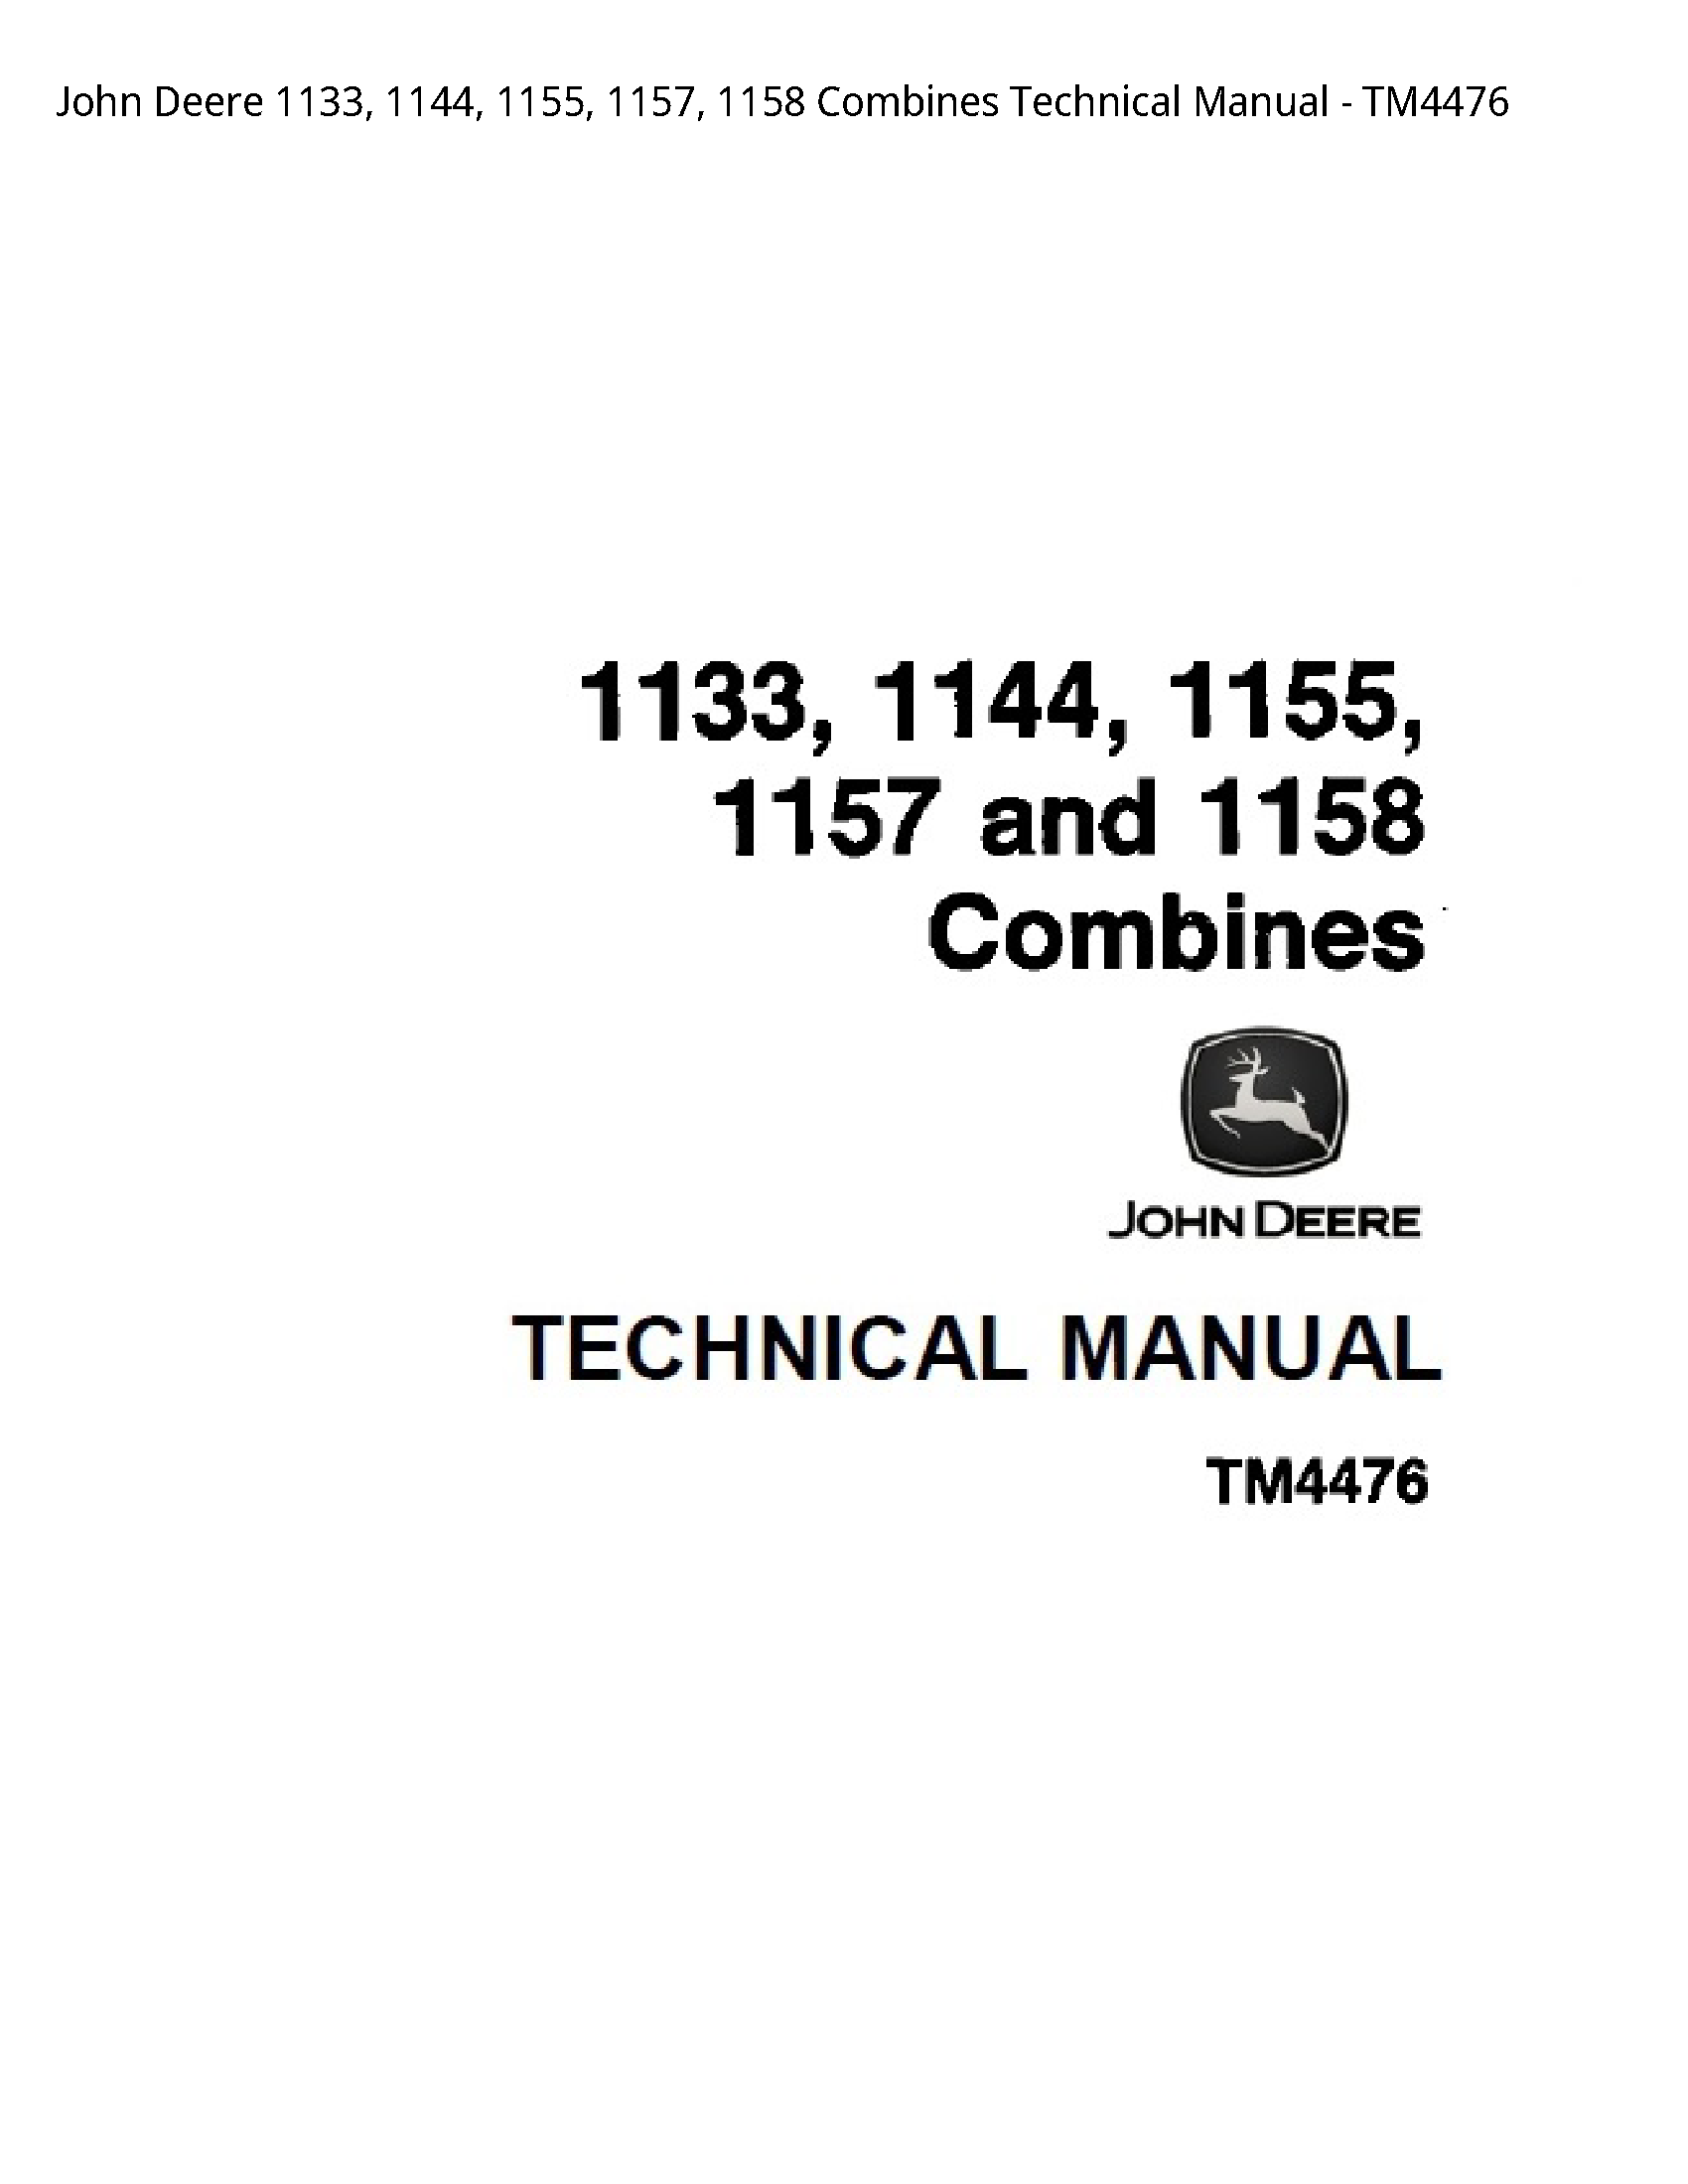 John Deere 1133 Combines Technical manual